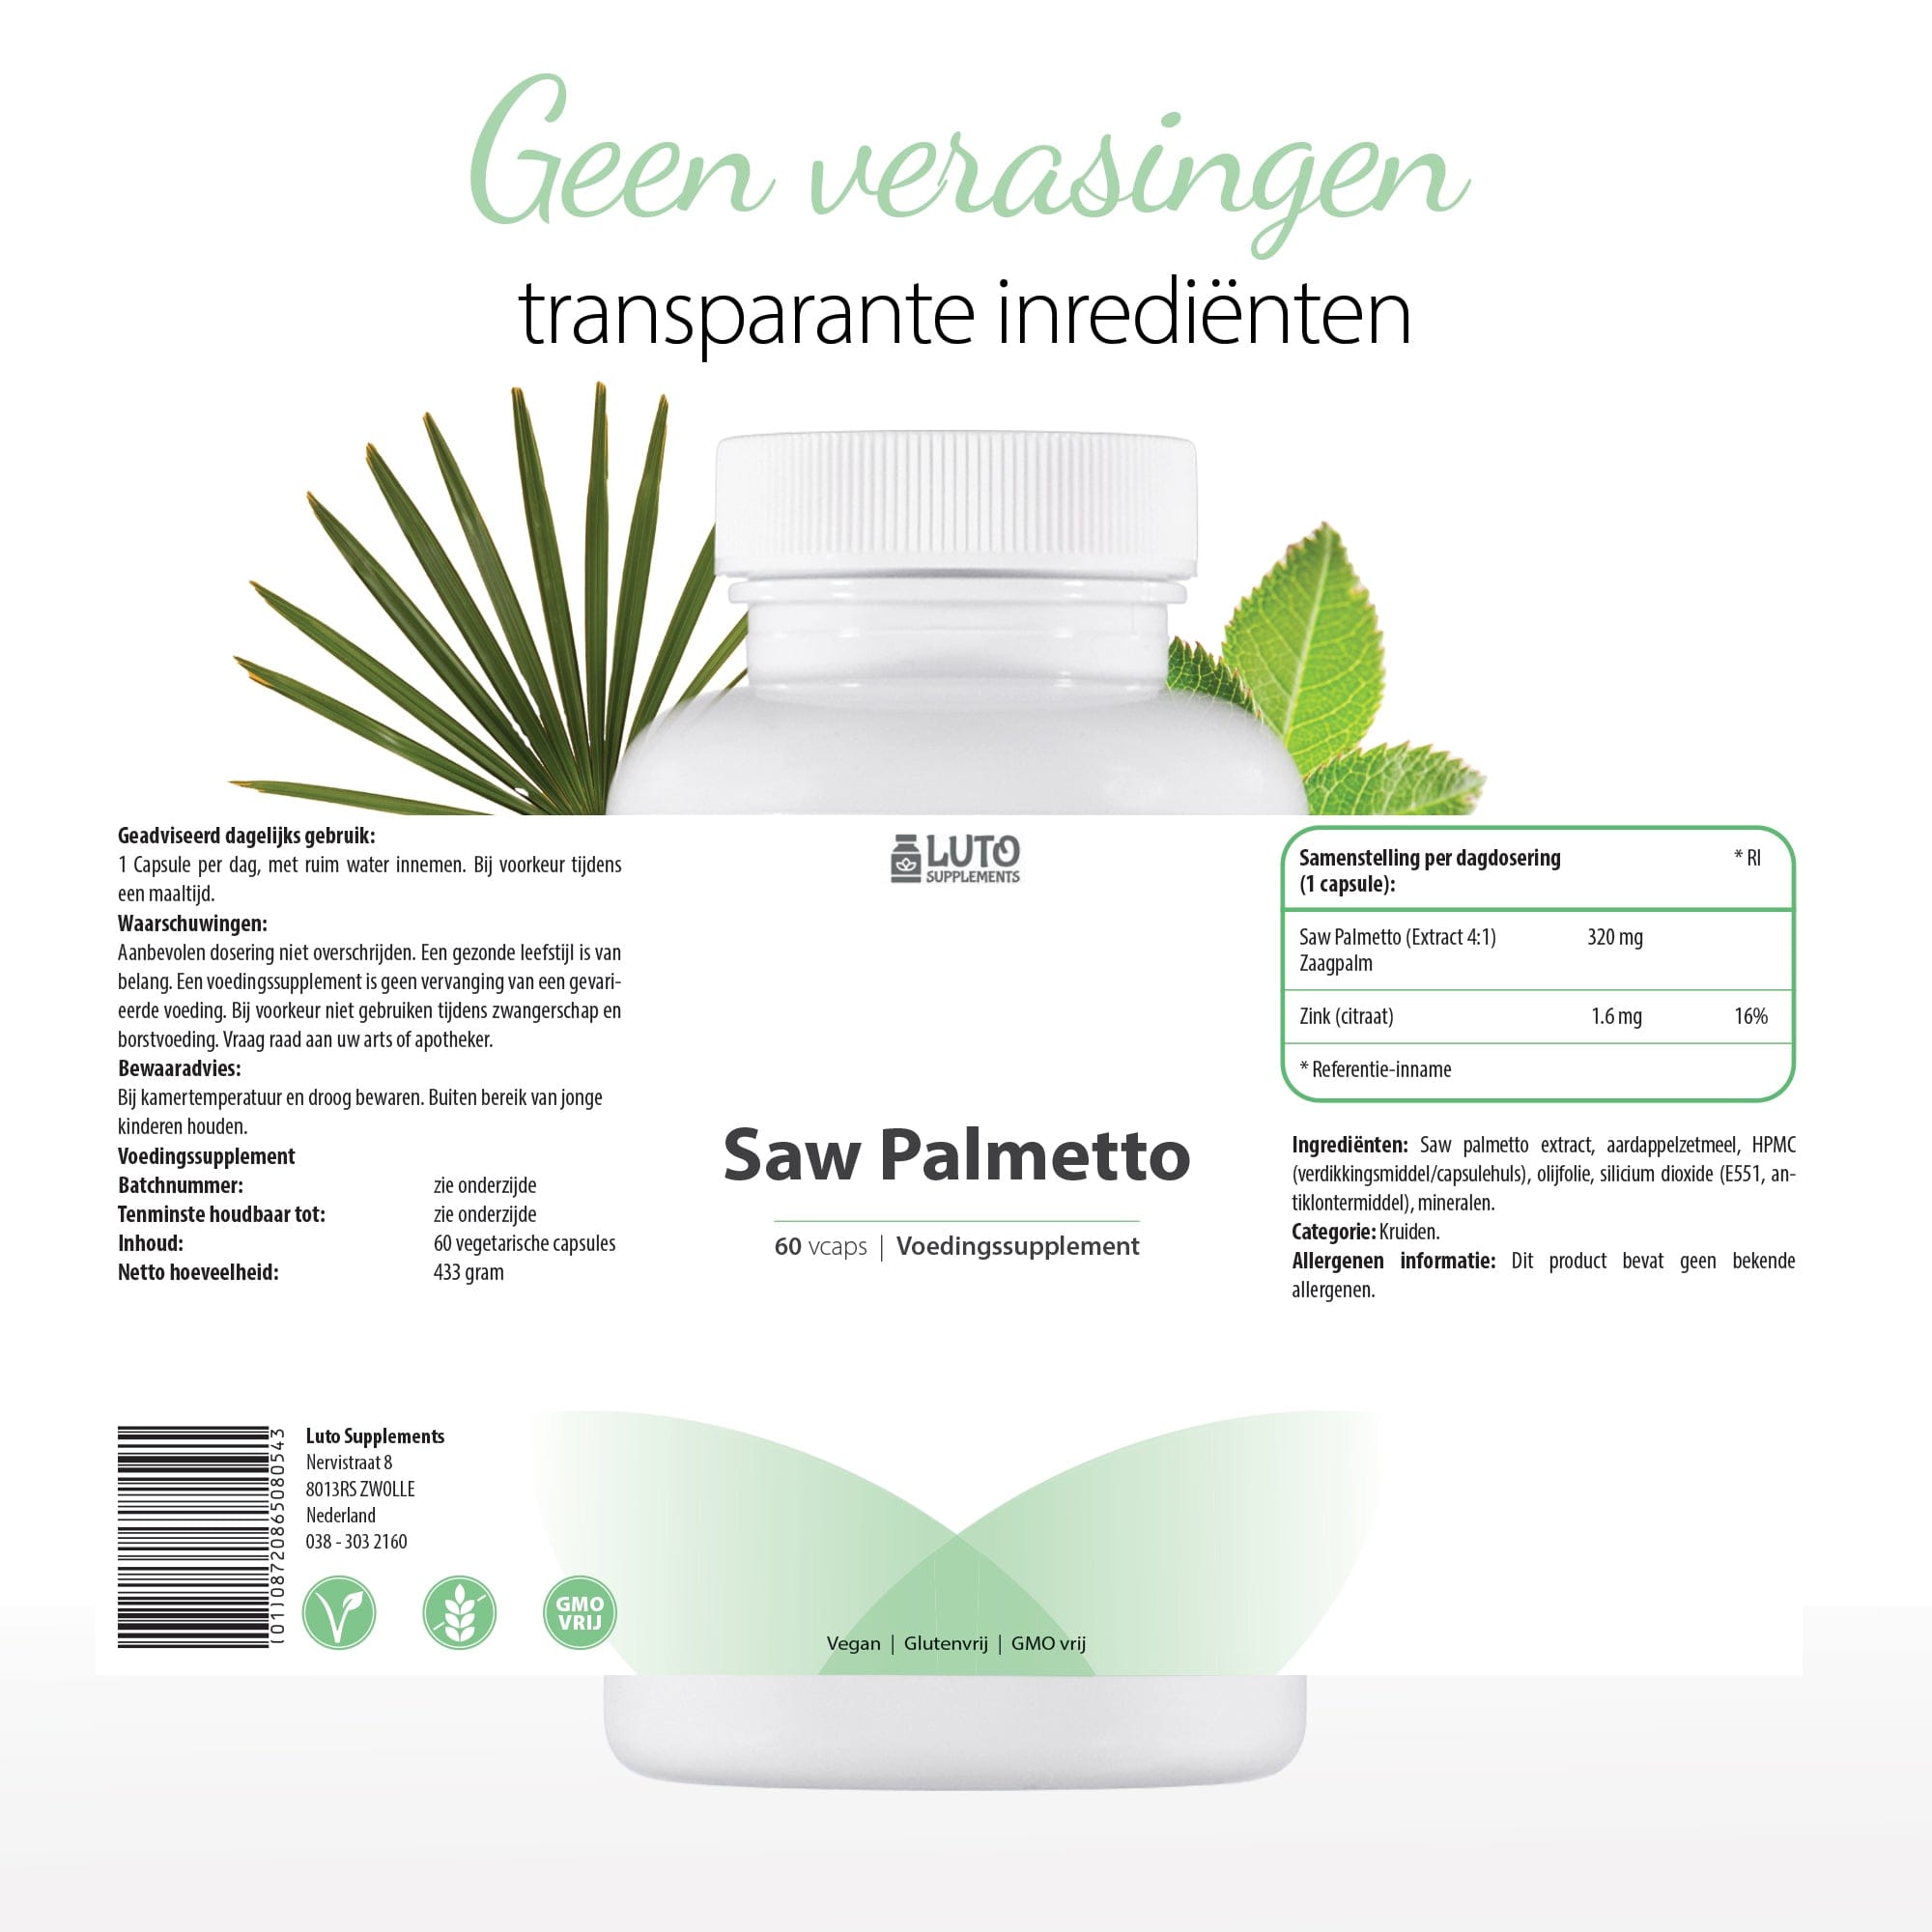 Saw Palmetto Extract 4:1 | Prostaat en haargroei* | 320mg | 60 Vegetarische capsules | Luto Supplements